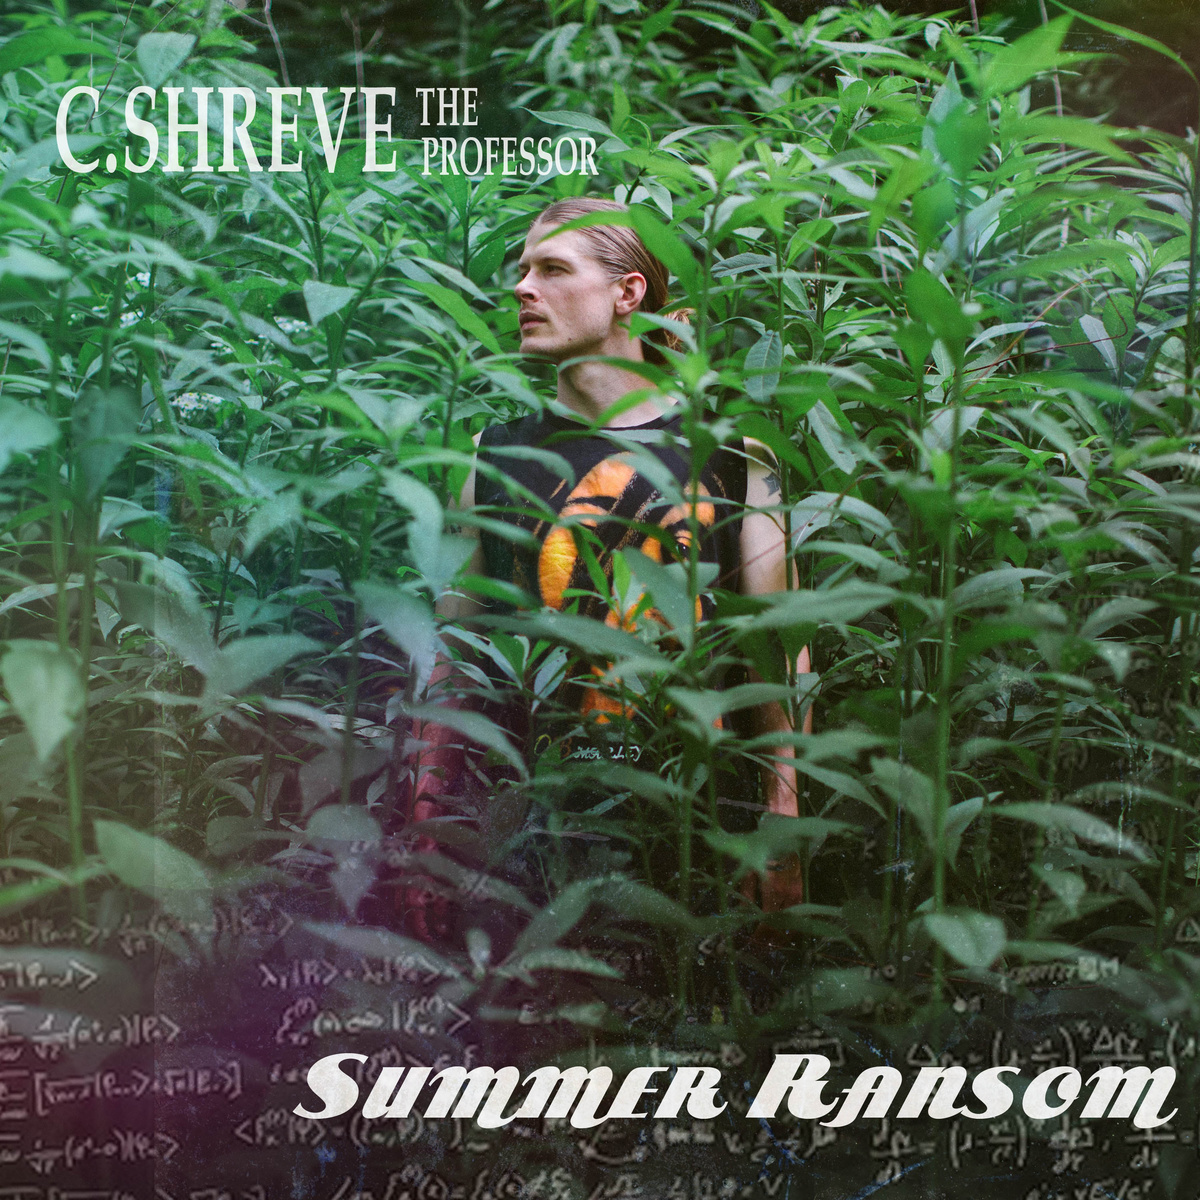 C.Shreve The Professor "Summer Ransom" Release | @seeshreve @FreeTheOptimus